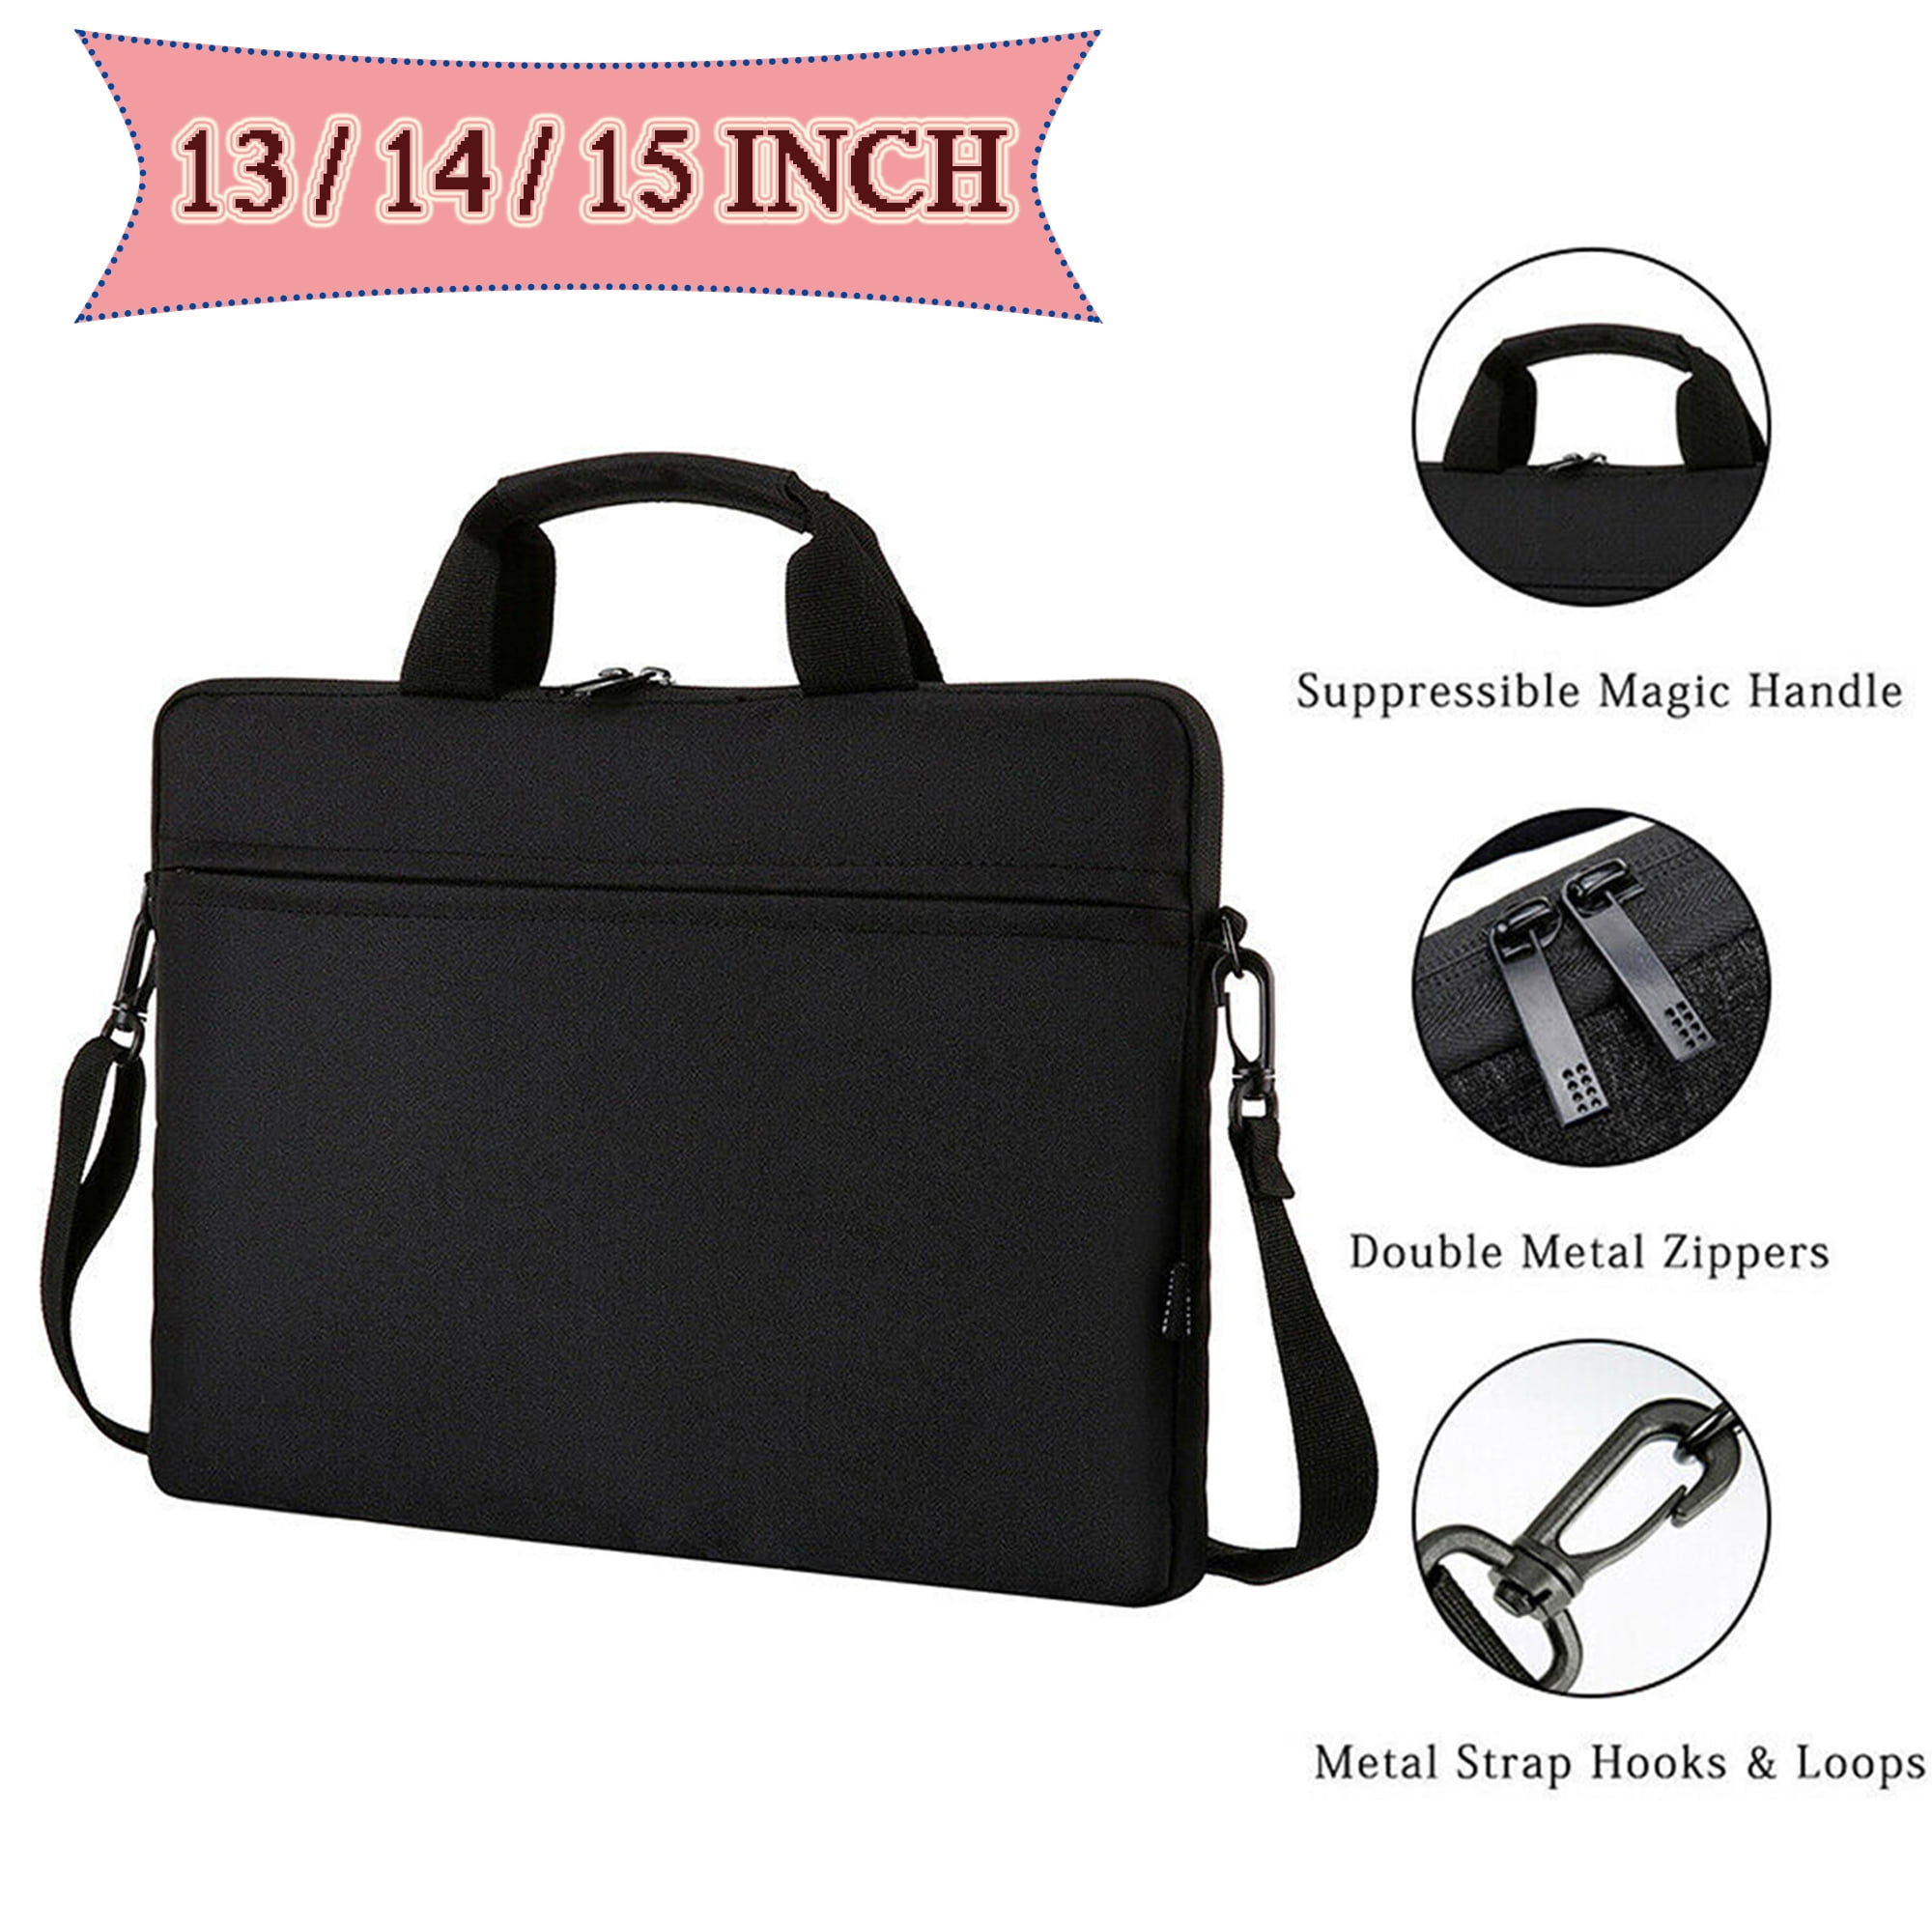 Sunsamy Laptop Bag Mens Business Briefcase Shoulder Bag Laptop Bag Leather Messenger Business Casual Bag 17 inch Notebook Bags Mobile Phone Tablet Bag